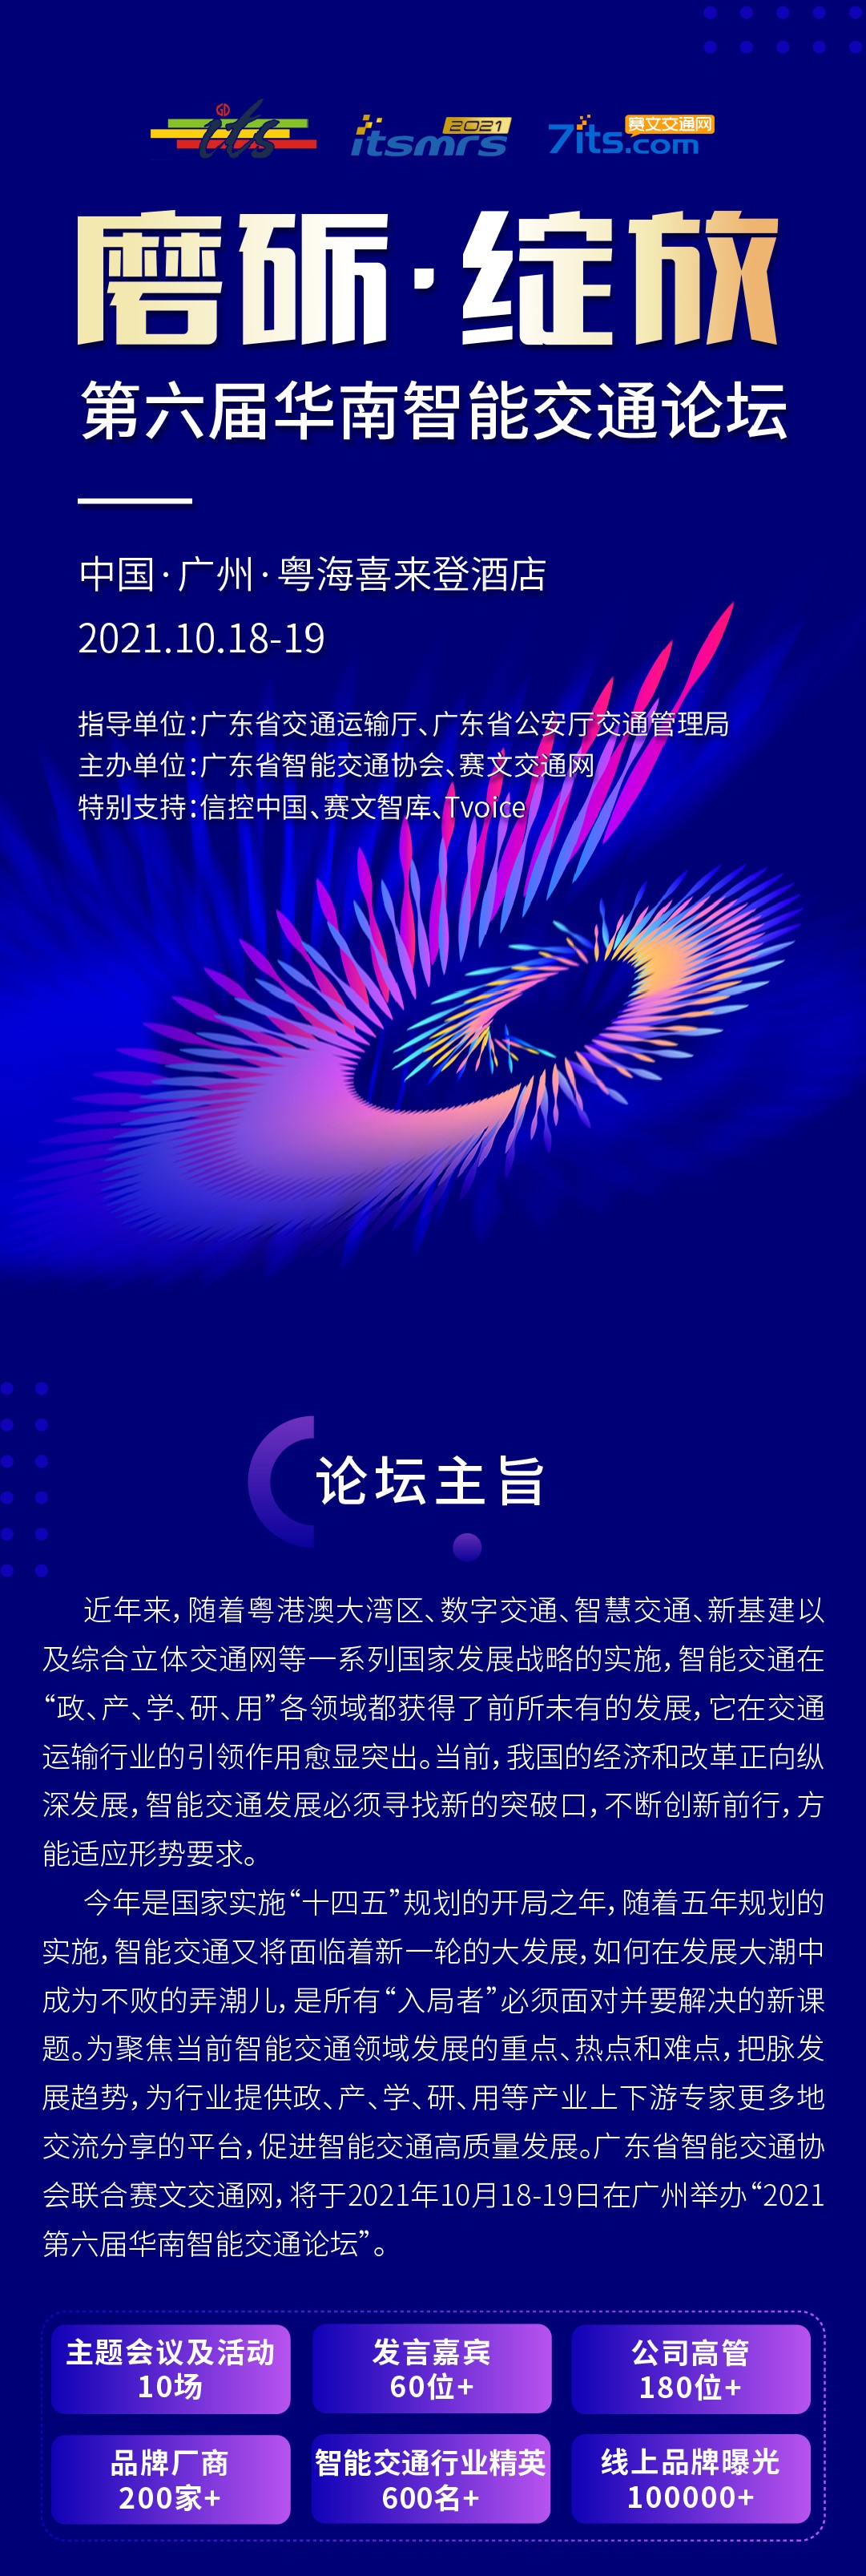 2021第六届华南智能交通论坛